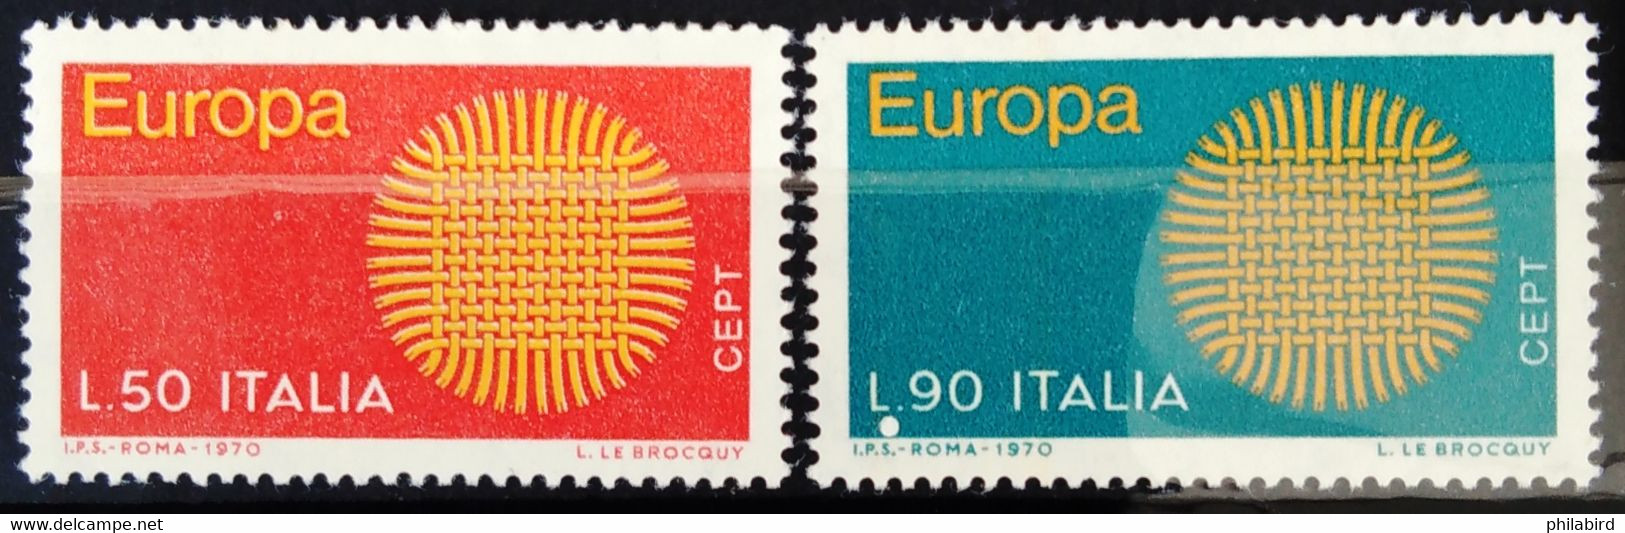 EUROPA 1970 - ITALIE                  N° 1047/1048                     NEUF** - 1970